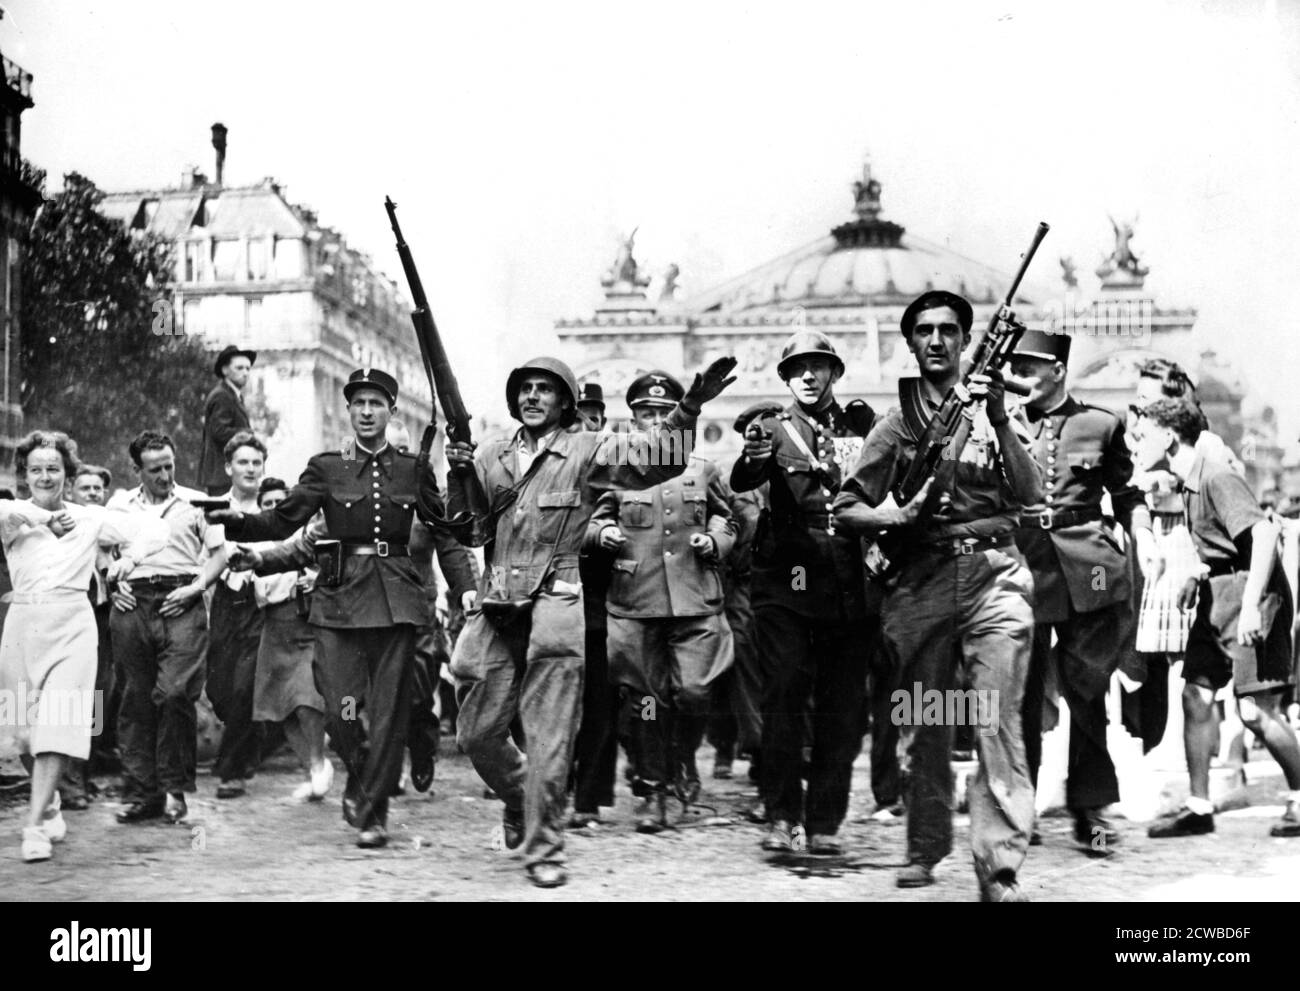 Liberazione di Parigi, 25 agosto 1944. Gendarmi, soldati e combattenti della resistenza che scortano i prigionieri tedeschi attraverso folle di civili giubilanti di fronte all'Opera. Il fotografo è sconosciuto. Foto Stock